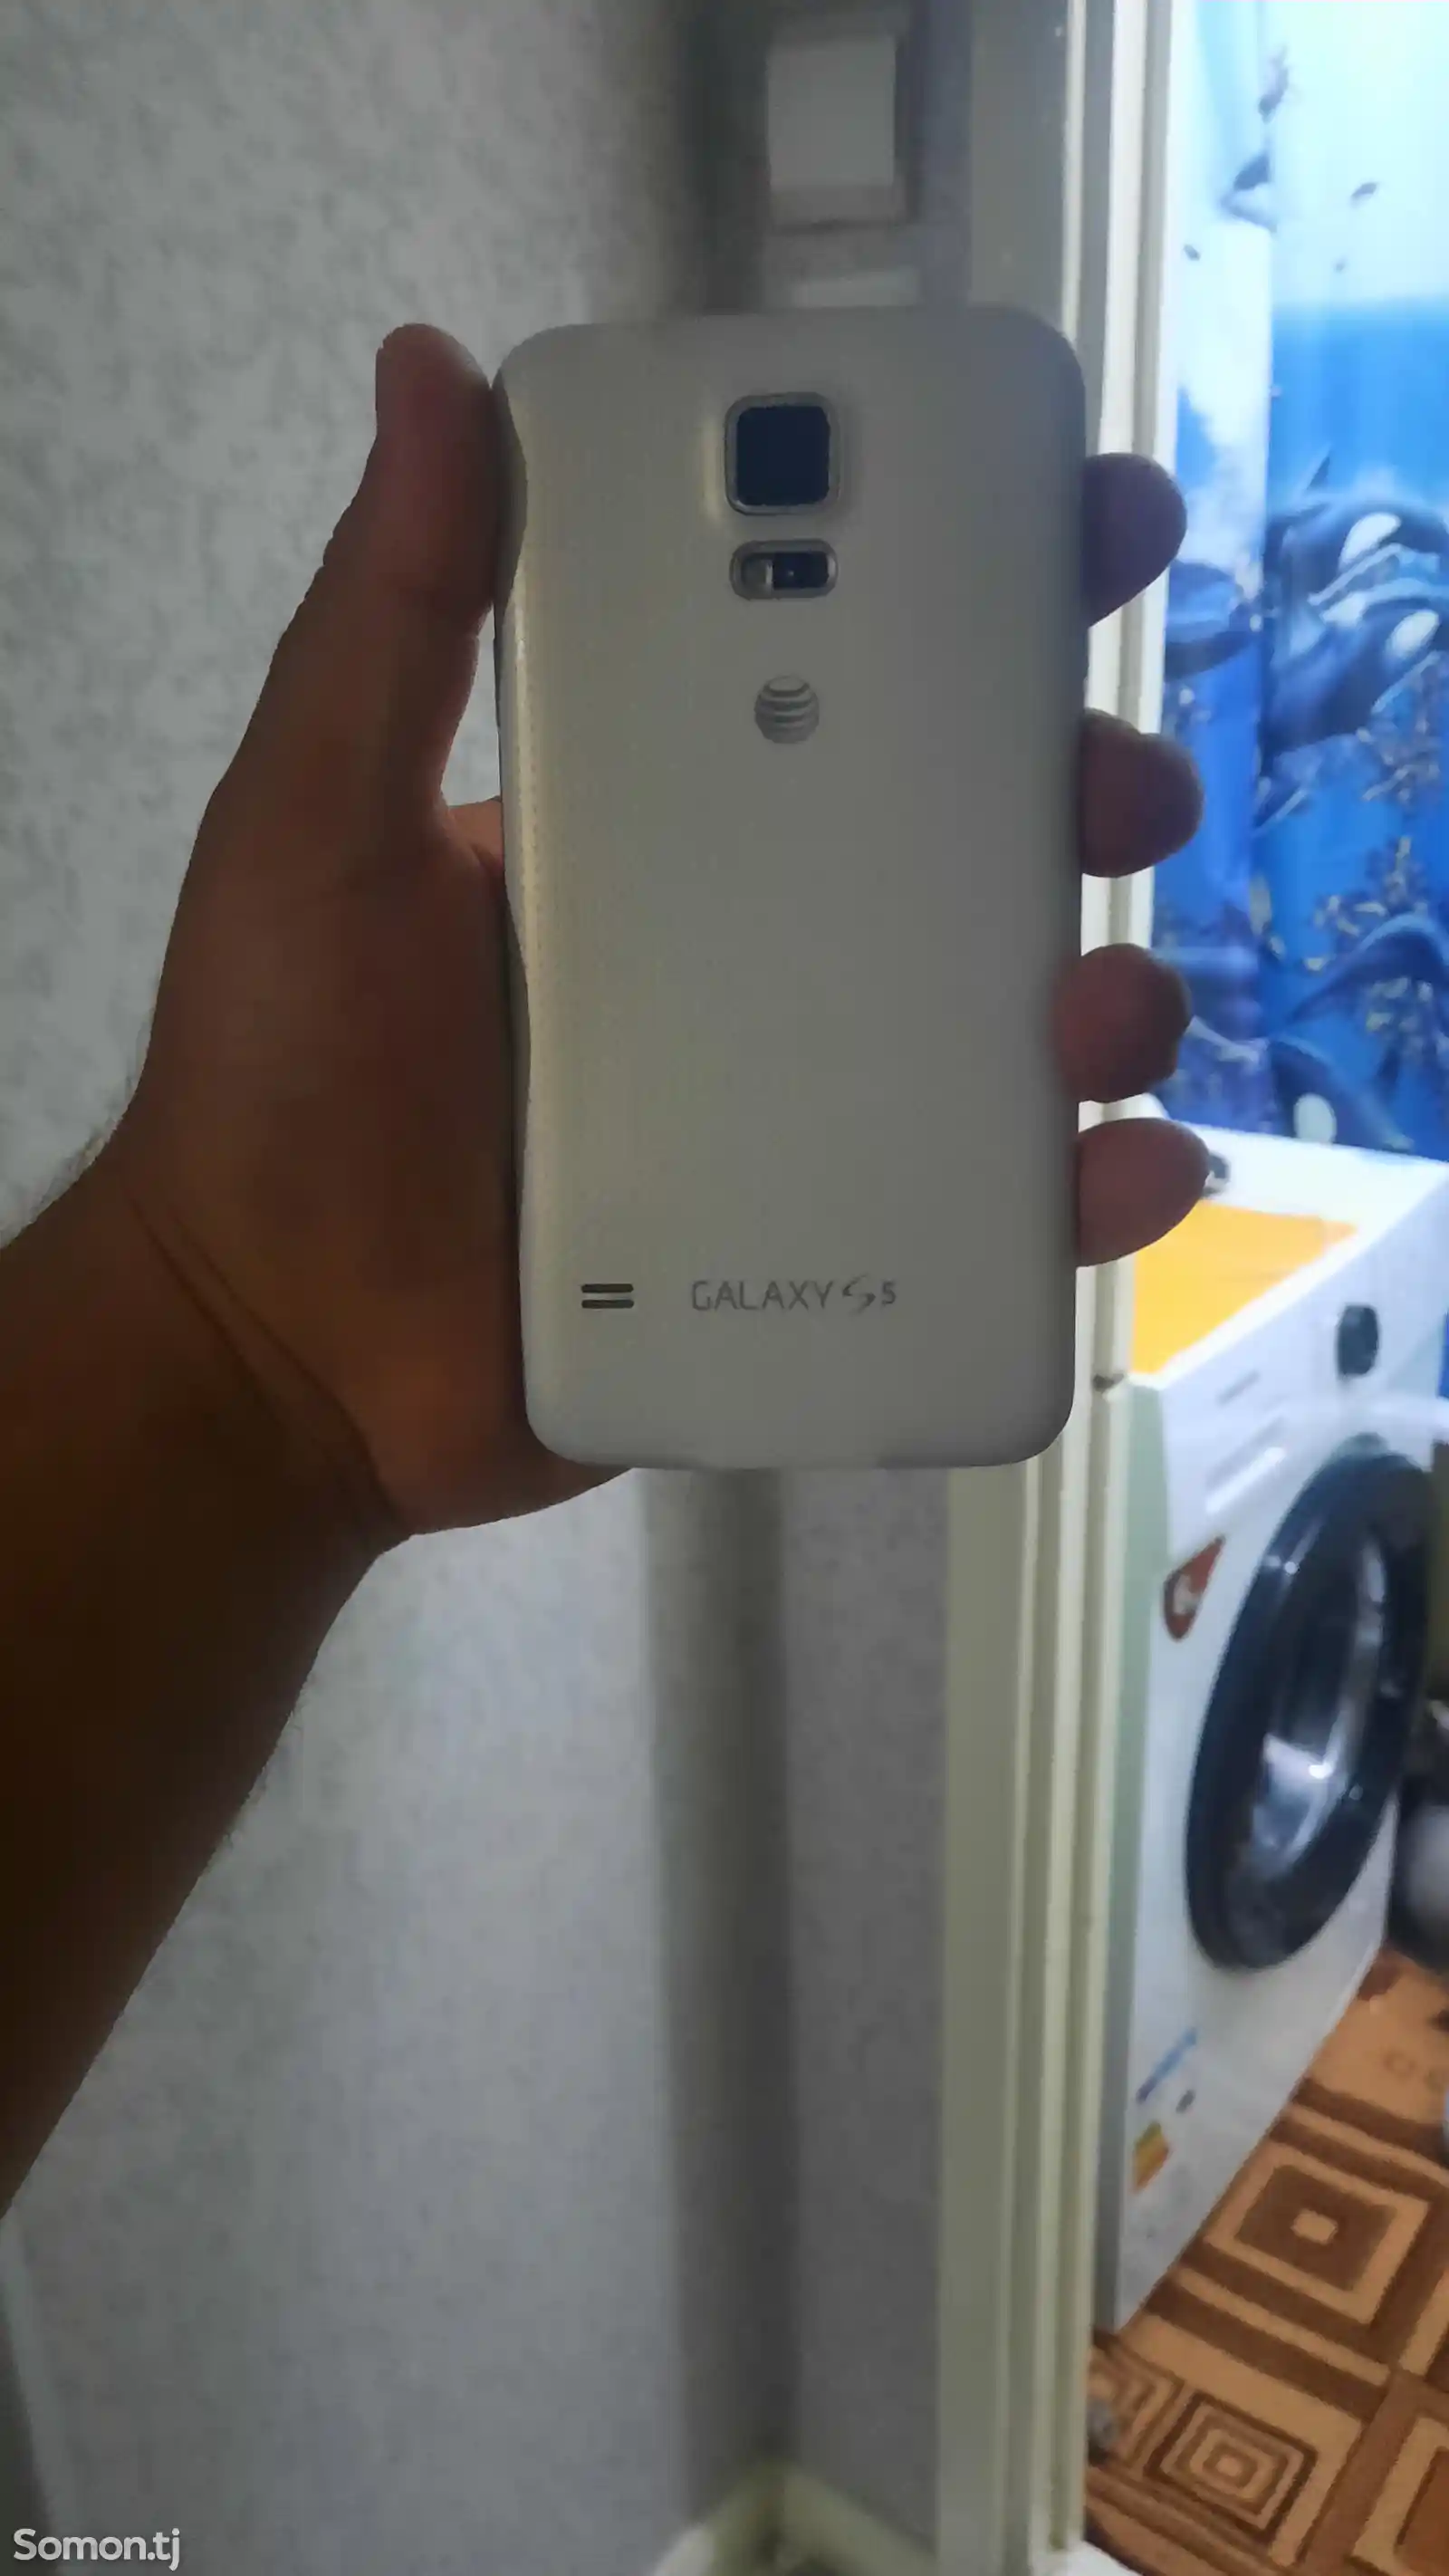 Samsung Galaxy S5-2